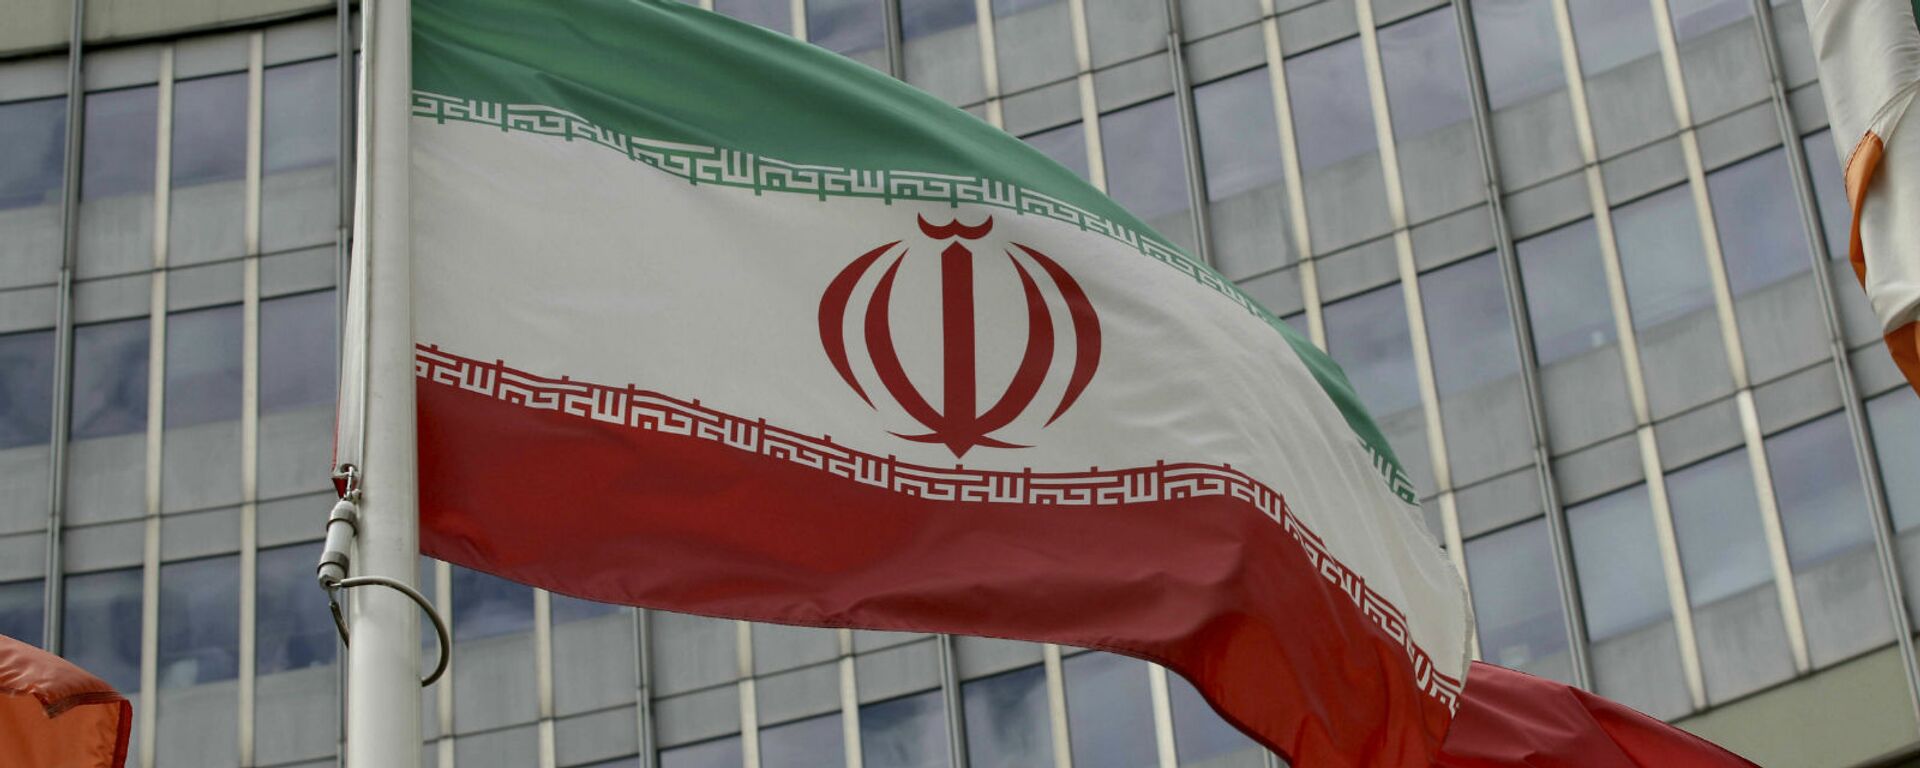 Иранский флаг развевается у здания ООН, в котором находится офис Международного агентства по атомной энергии МАГАТЭ (10 июля 2019). Вена - Sputnik Армения, 1920, 16.12.2021